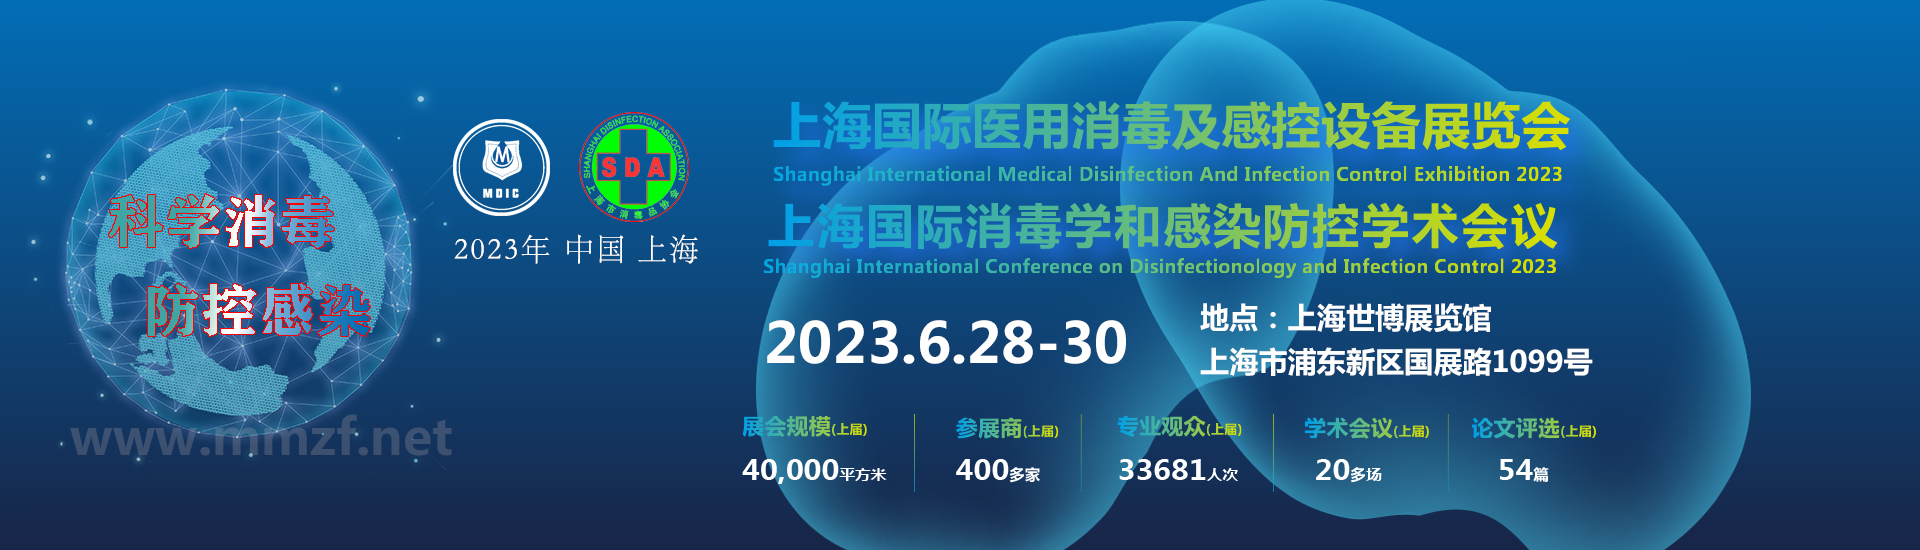 2023上海国际消毒及感染防控展会专家名单